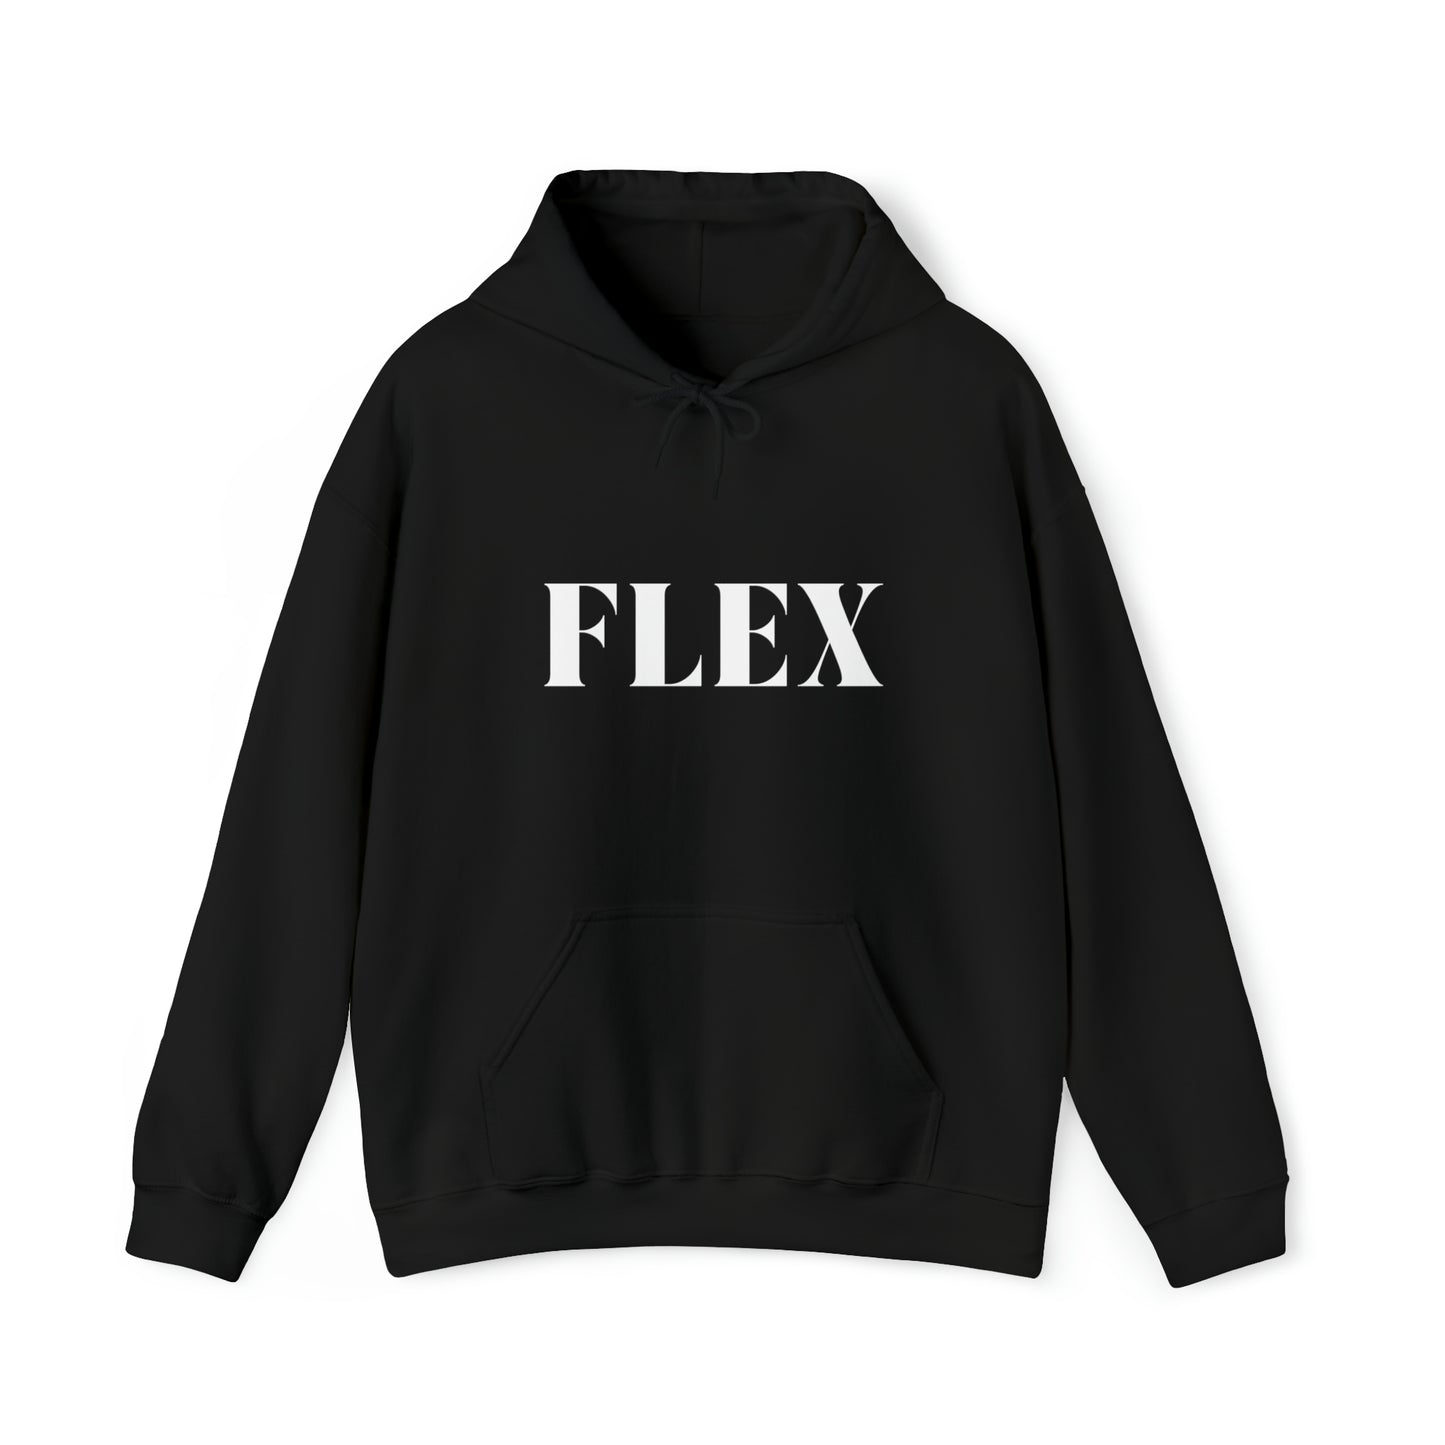 S Black Flex Hoodie from HoodySZN.com